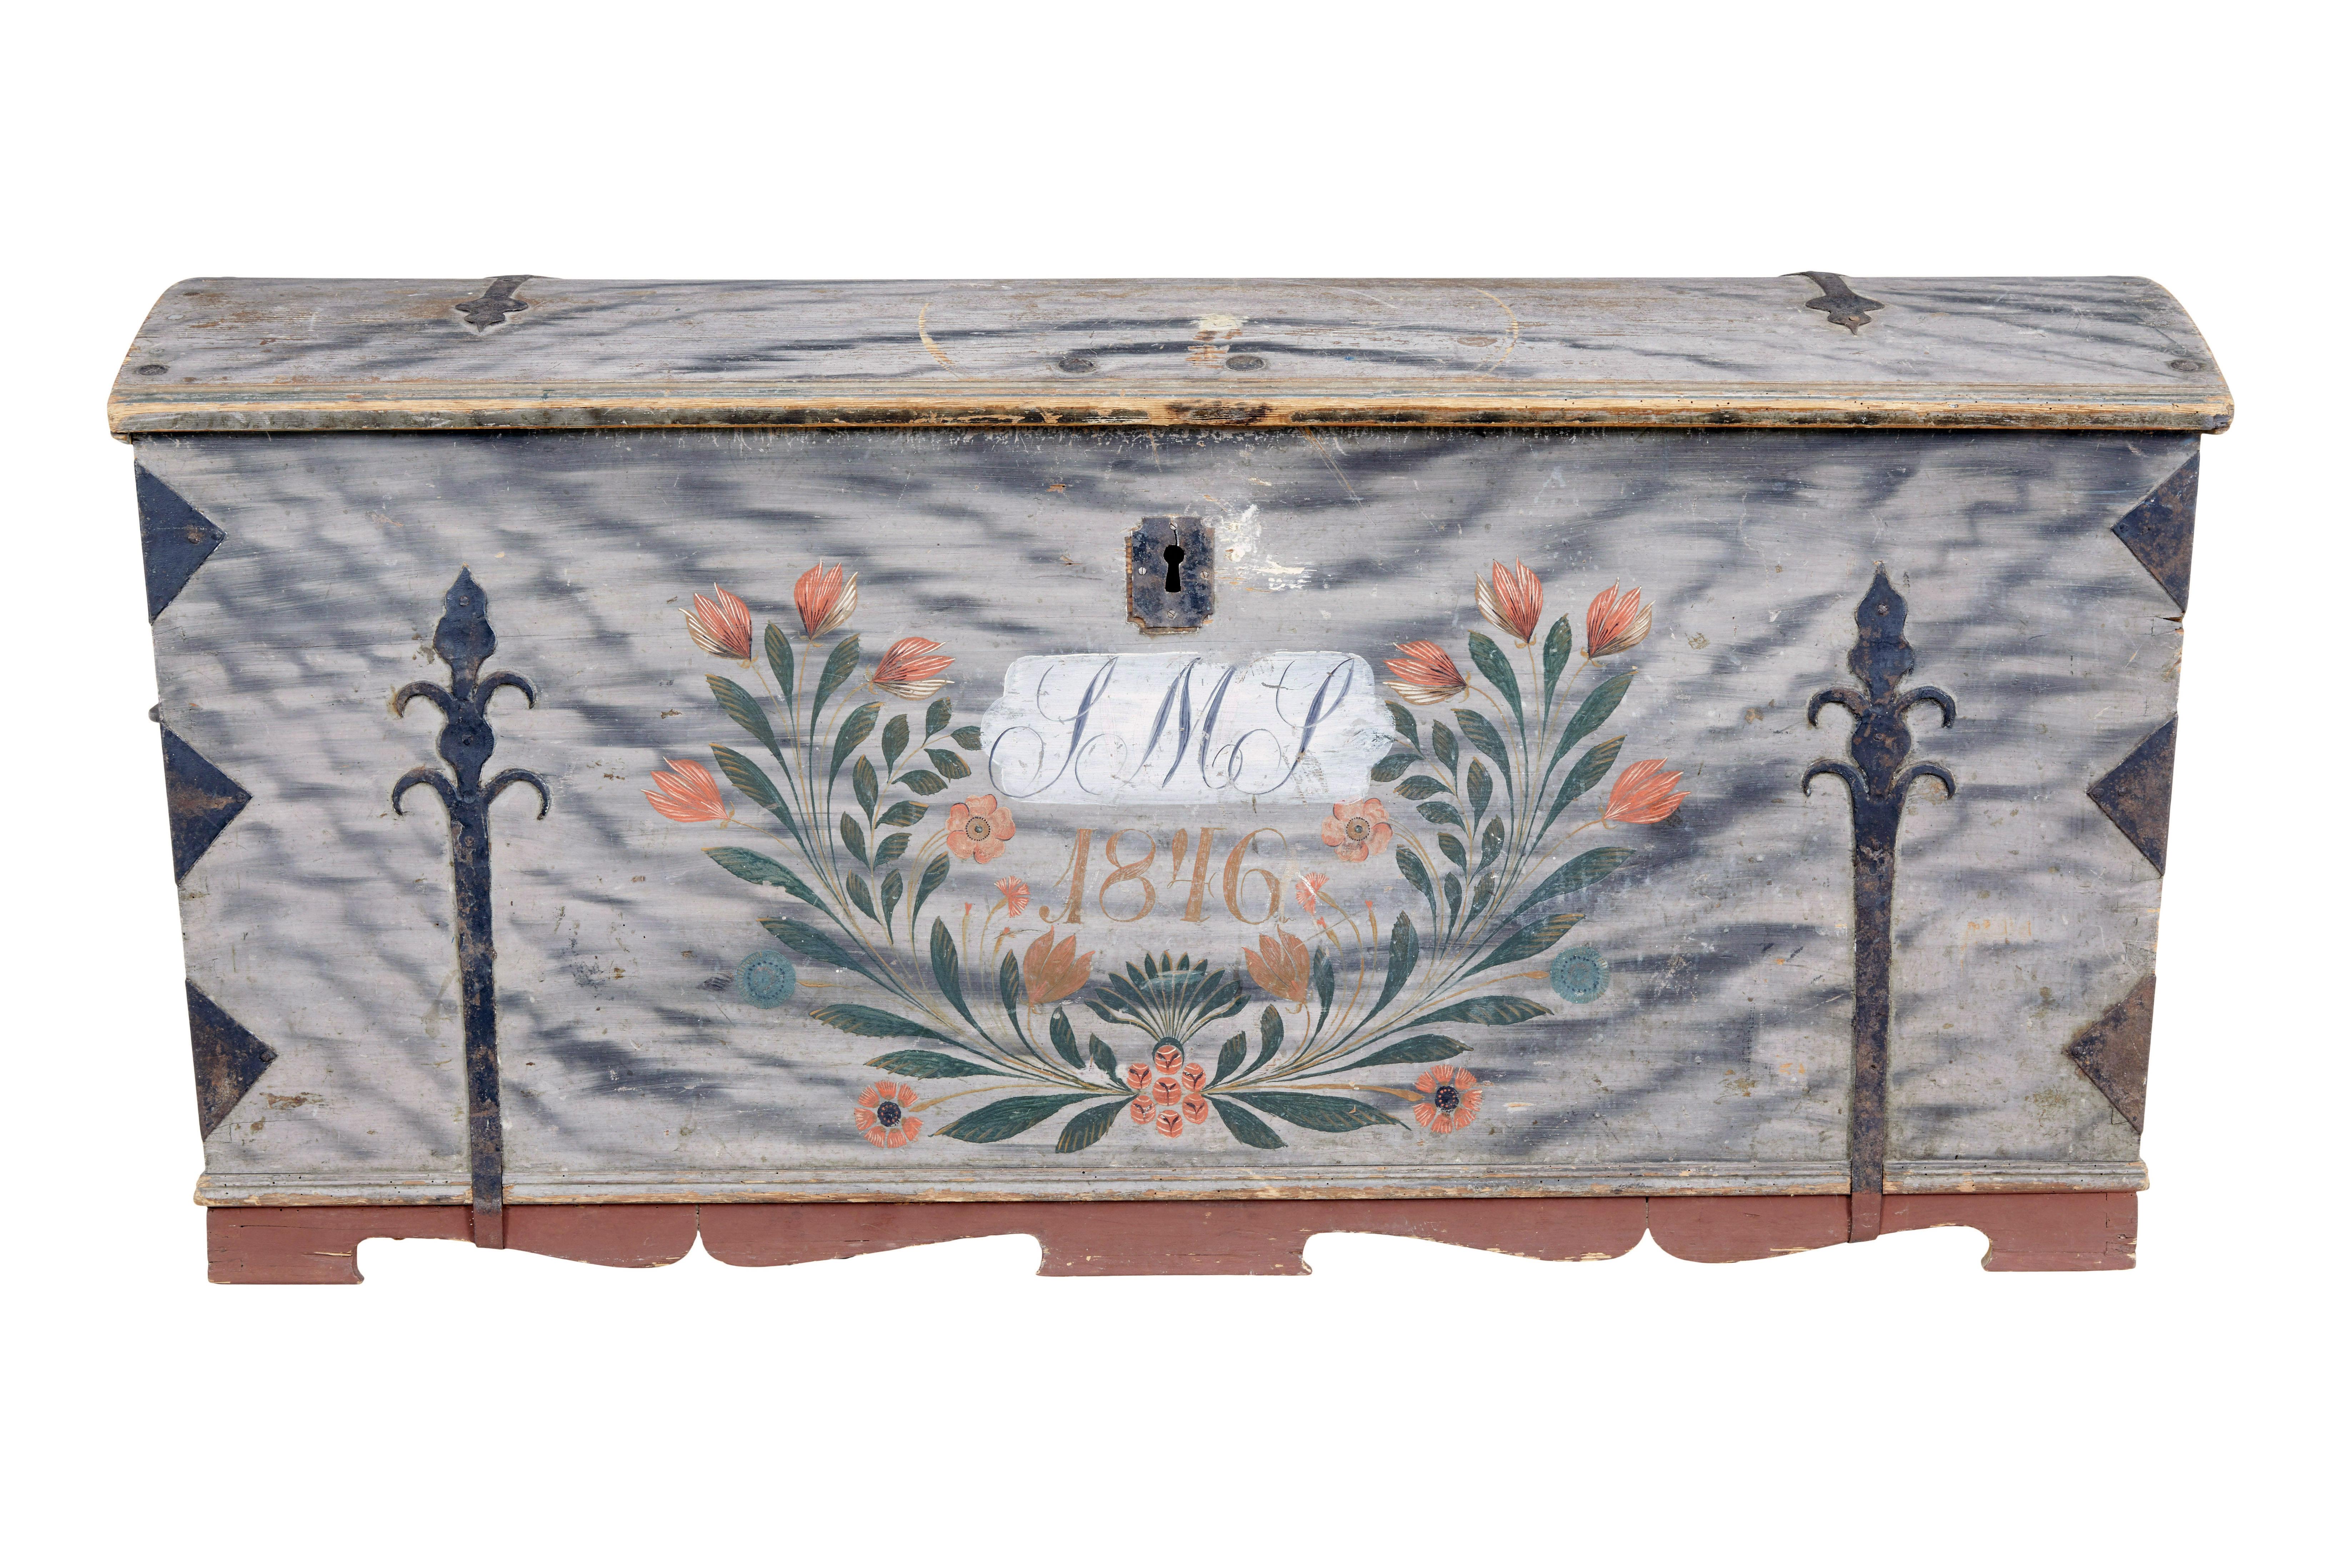 Coffre suédois à dôme peint à la main au milieu du 19e siècle, vers 1846.

Magnifique coffre à dôme, qui a manifestement été choyé par le niveau de décoration.  Paraphé au recto et daté de 1846, entouré de fleurs peintes à la main.  Intérieur avec